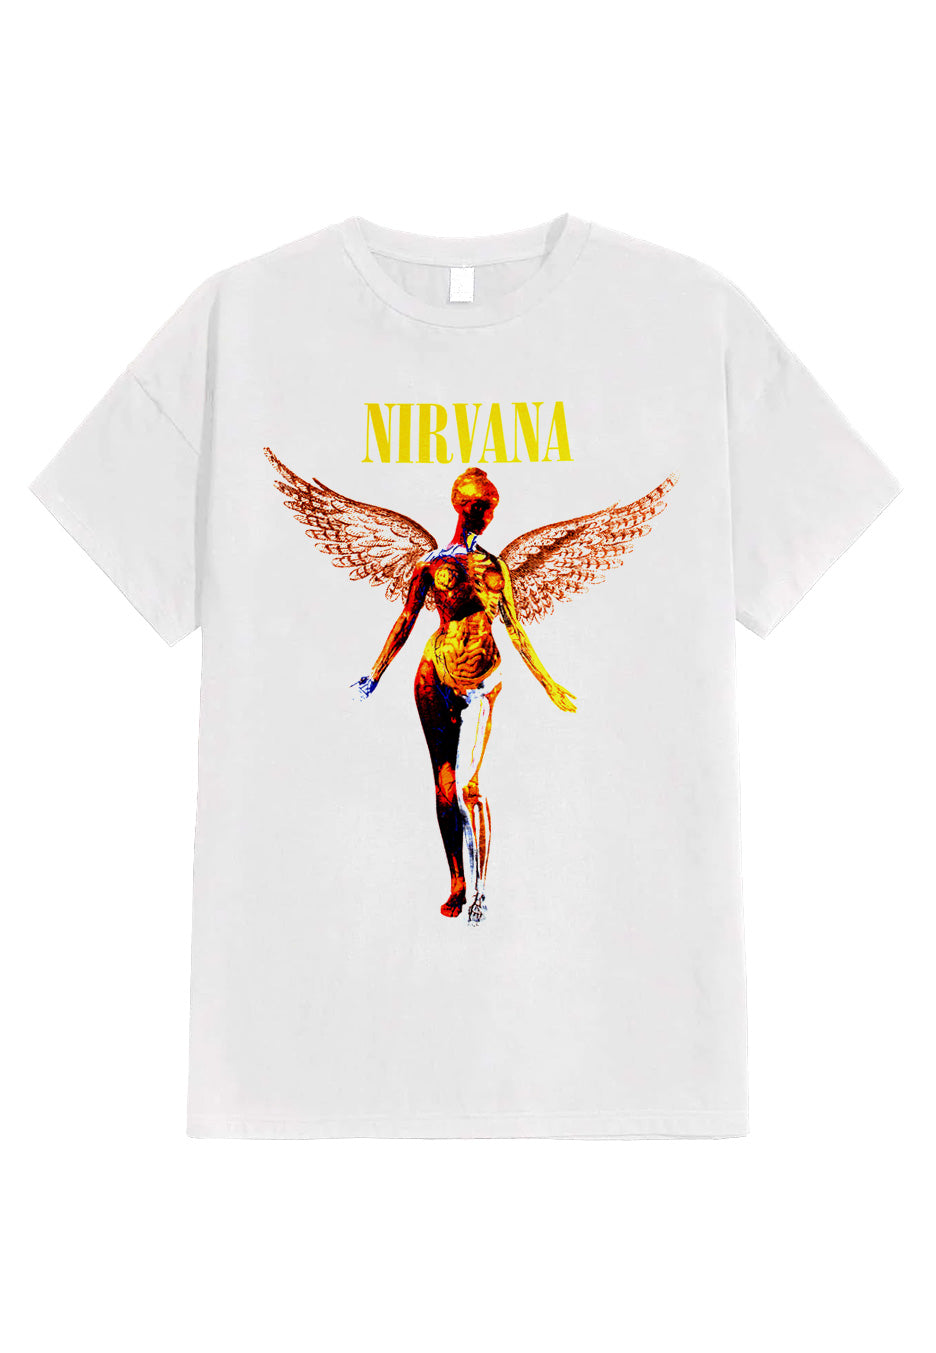 Nirvana - In Utero White - T-Shirt